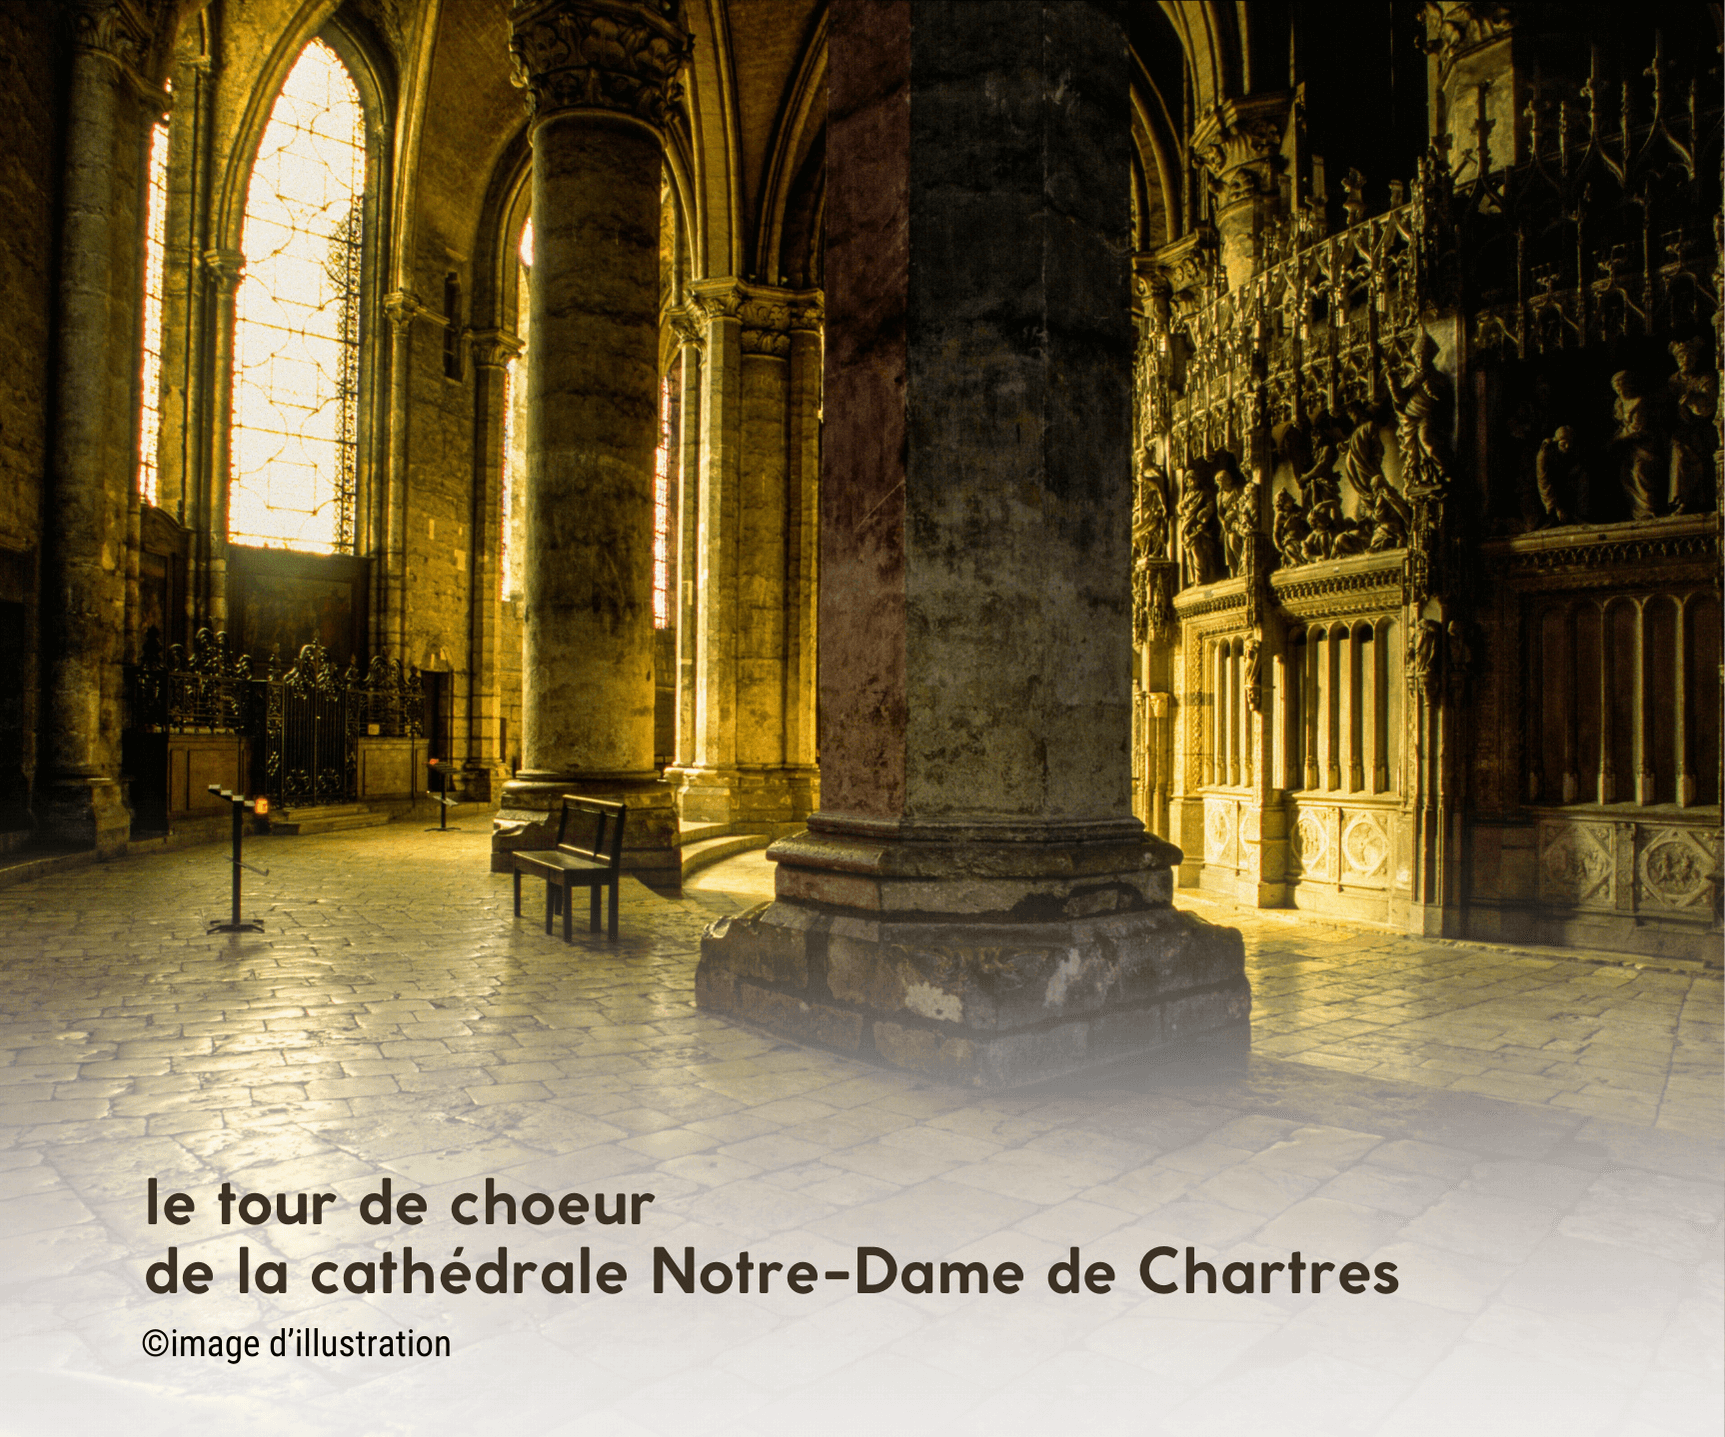 le Tour de choeur de la cathédrale Notre-Dame de Chartres